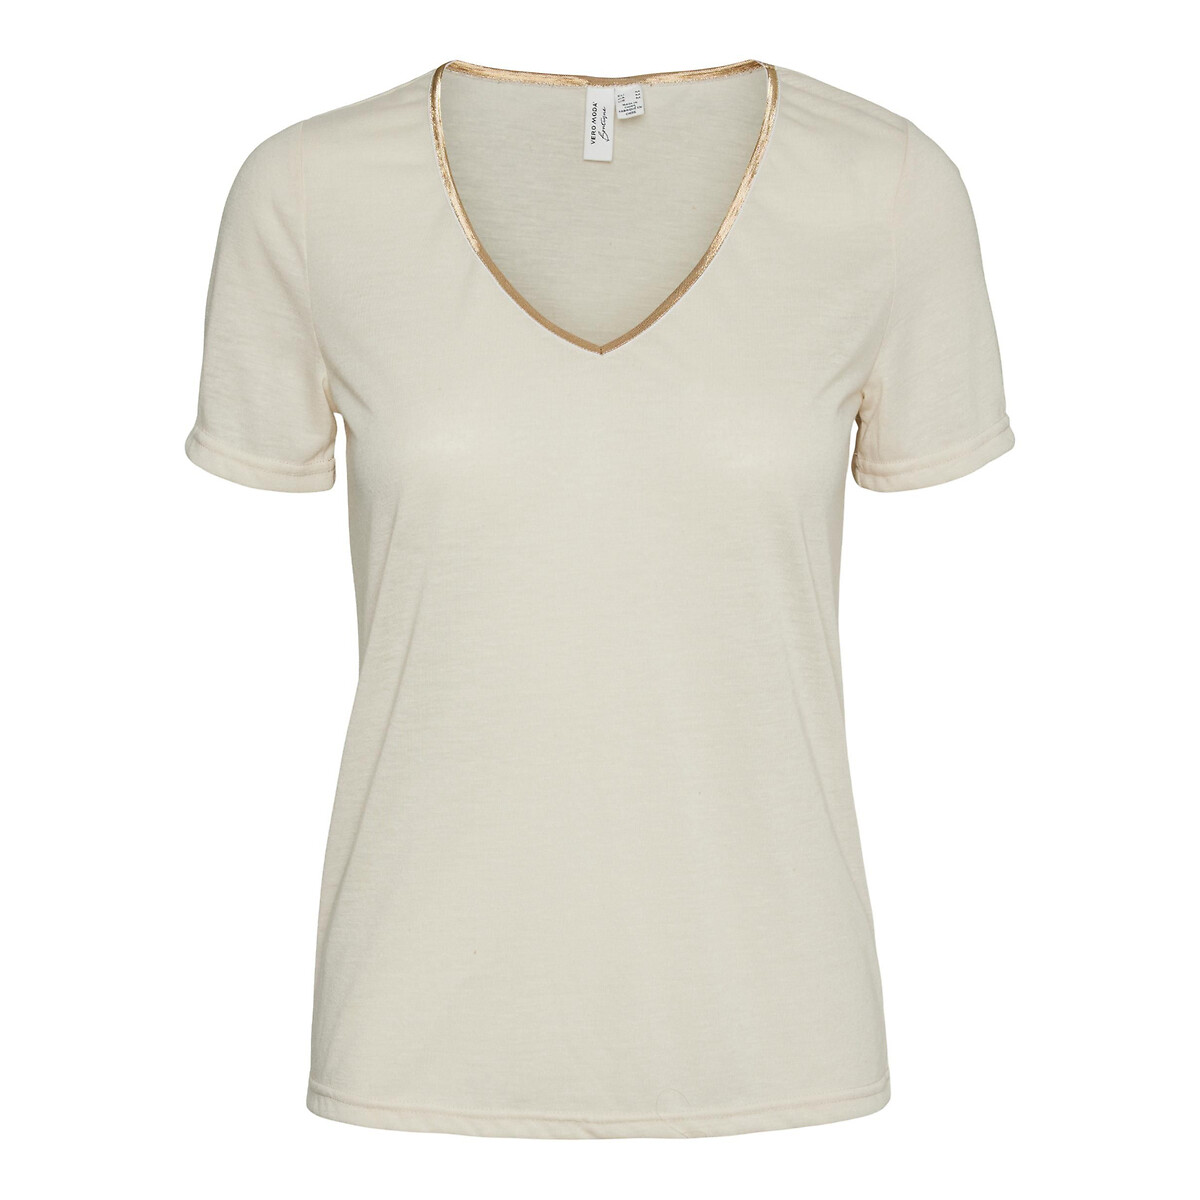 Vero moda T-shirt met V-hals, goudkleurig boordje